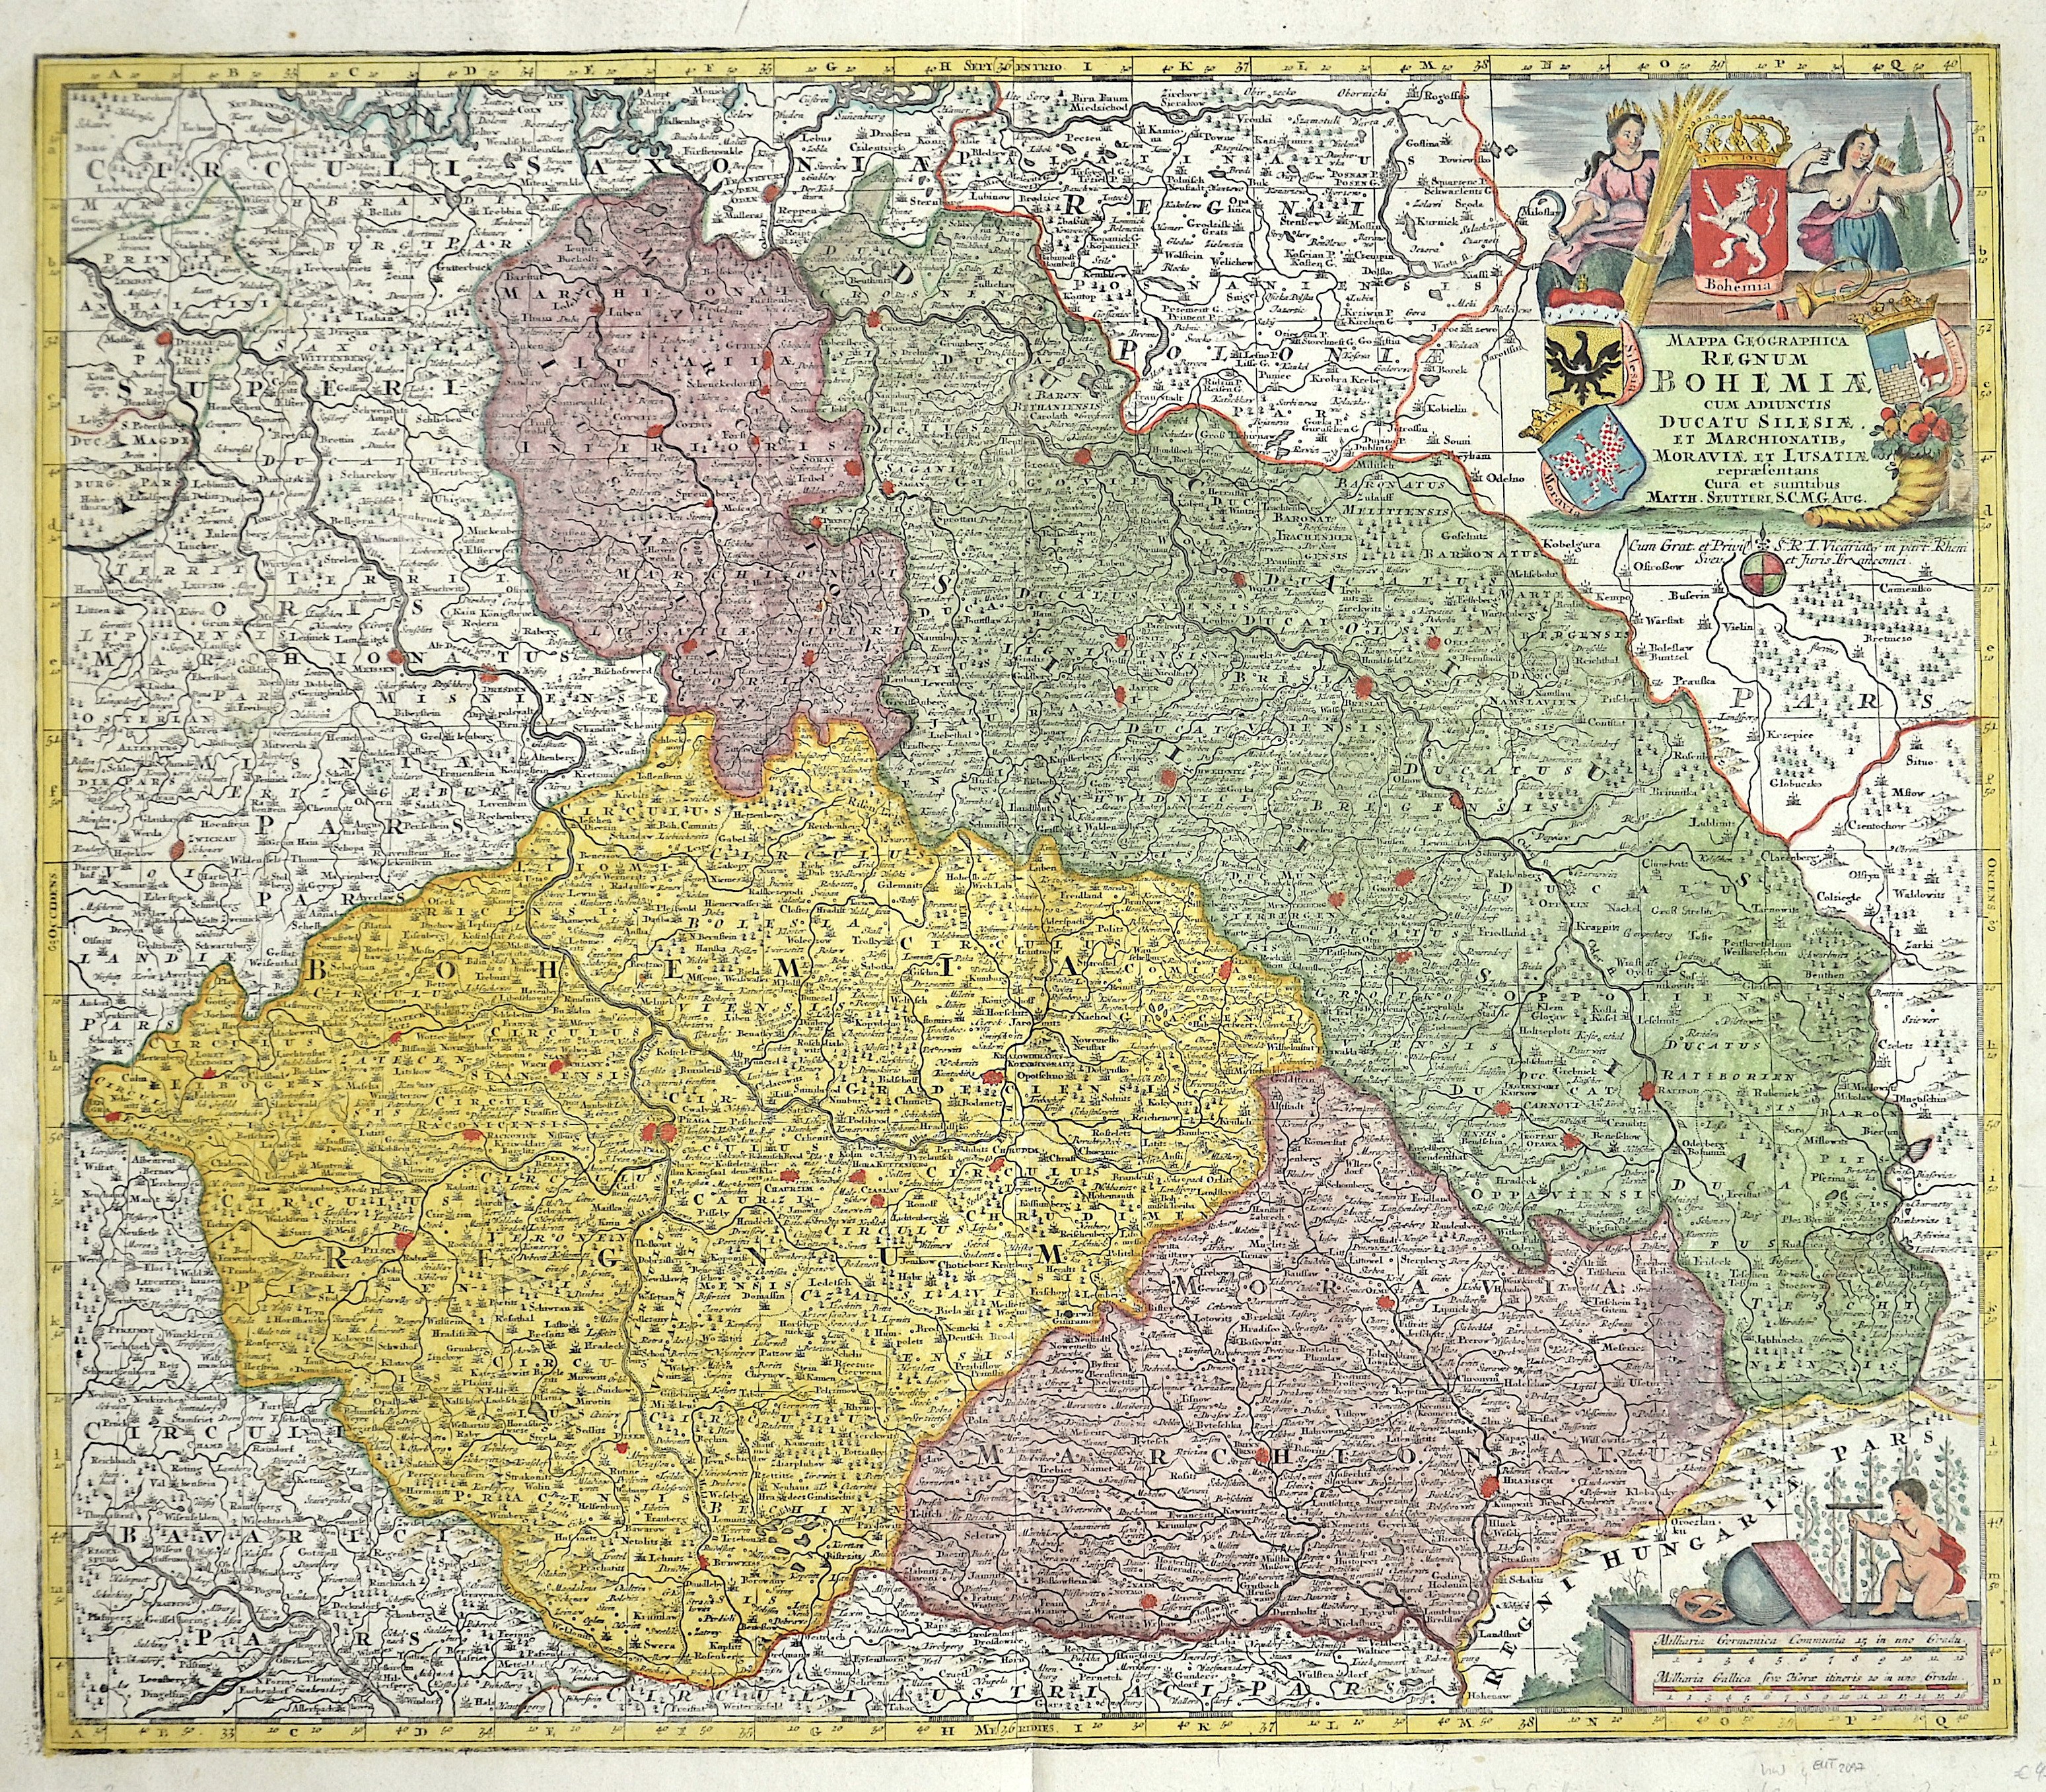 Seutter  Mappa geographica regnum Bohemia cum adjunctis ducatu Silesiae et Marchionatib, Moravia et Lusatiae